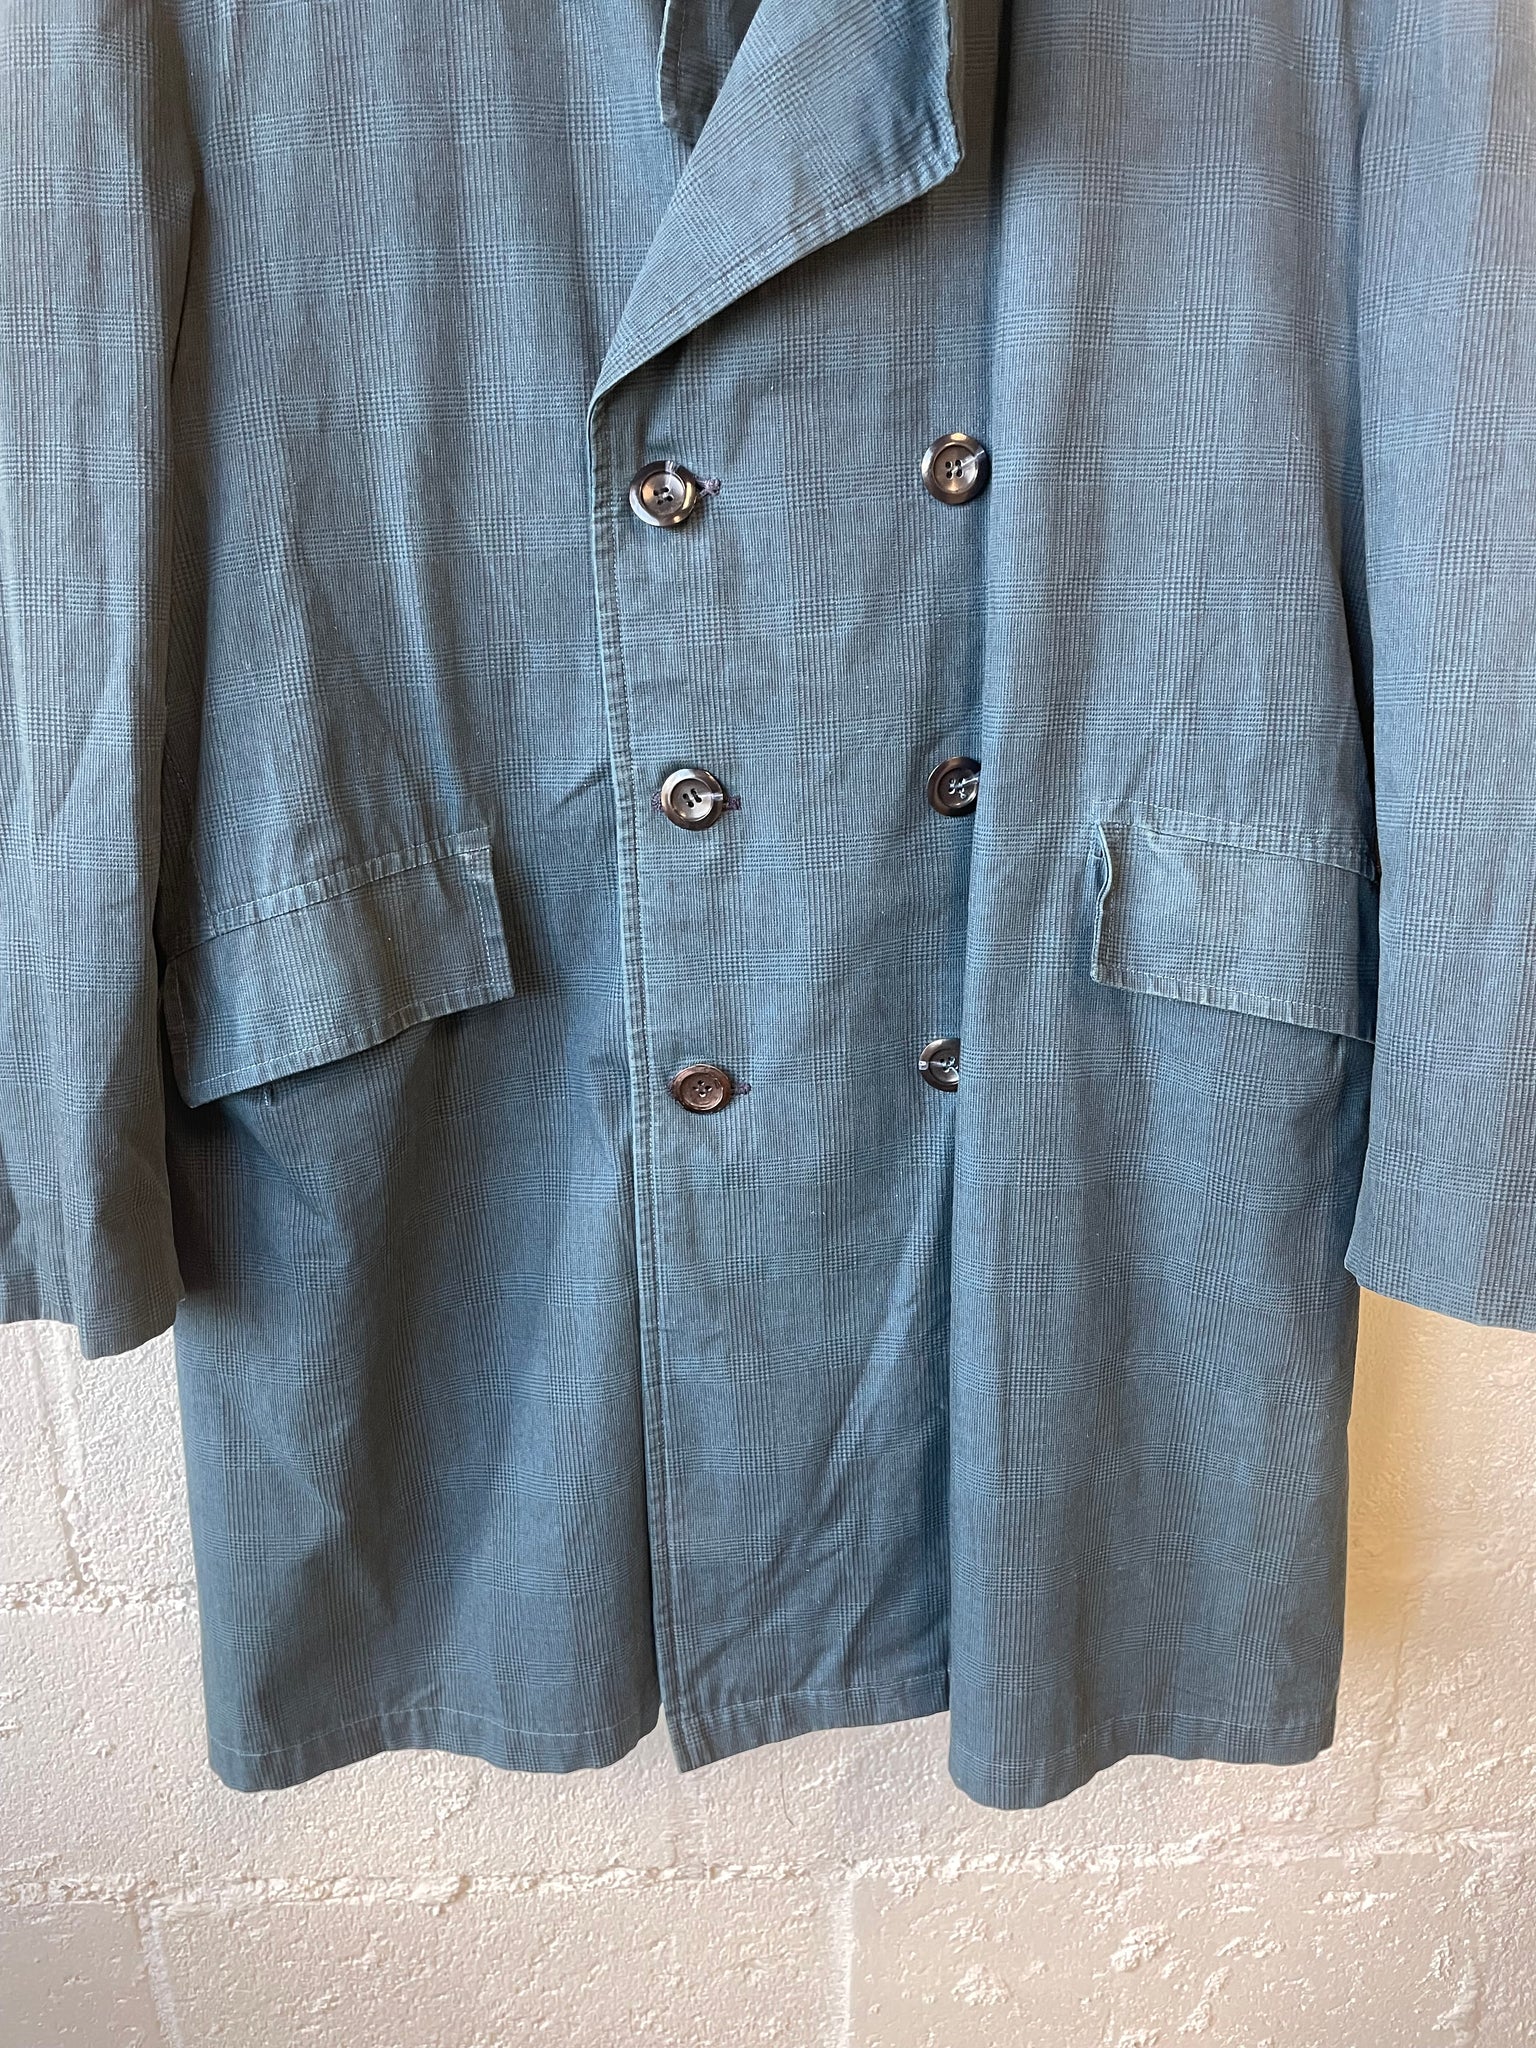 Vintage Blue Coat